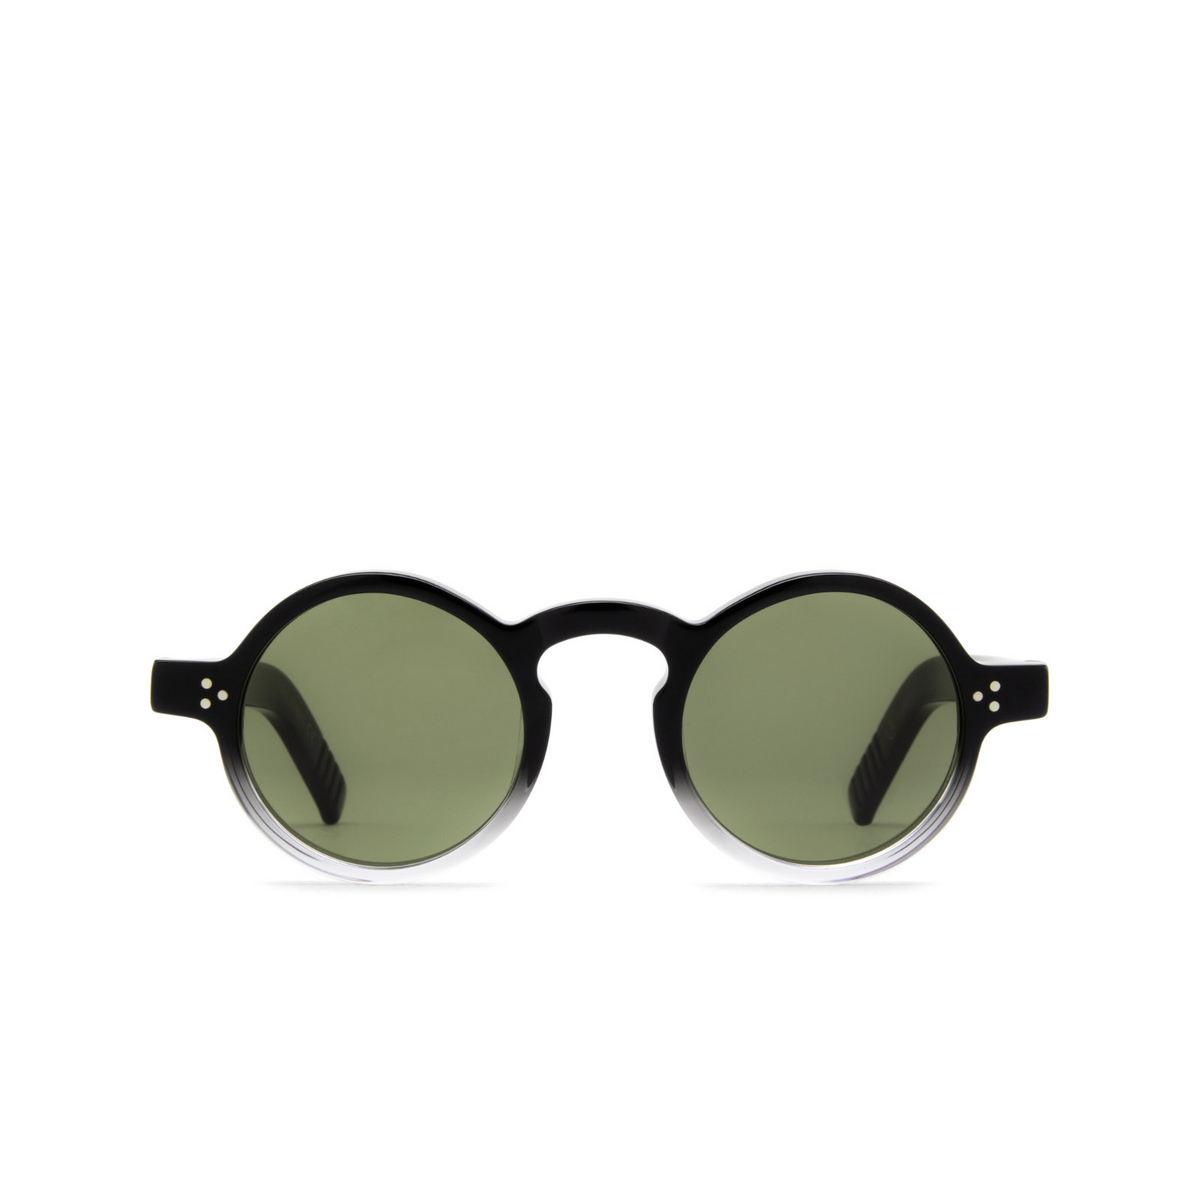 Lesca® Round Sunglasses: S.freud color Black Gradient Deg - front view.